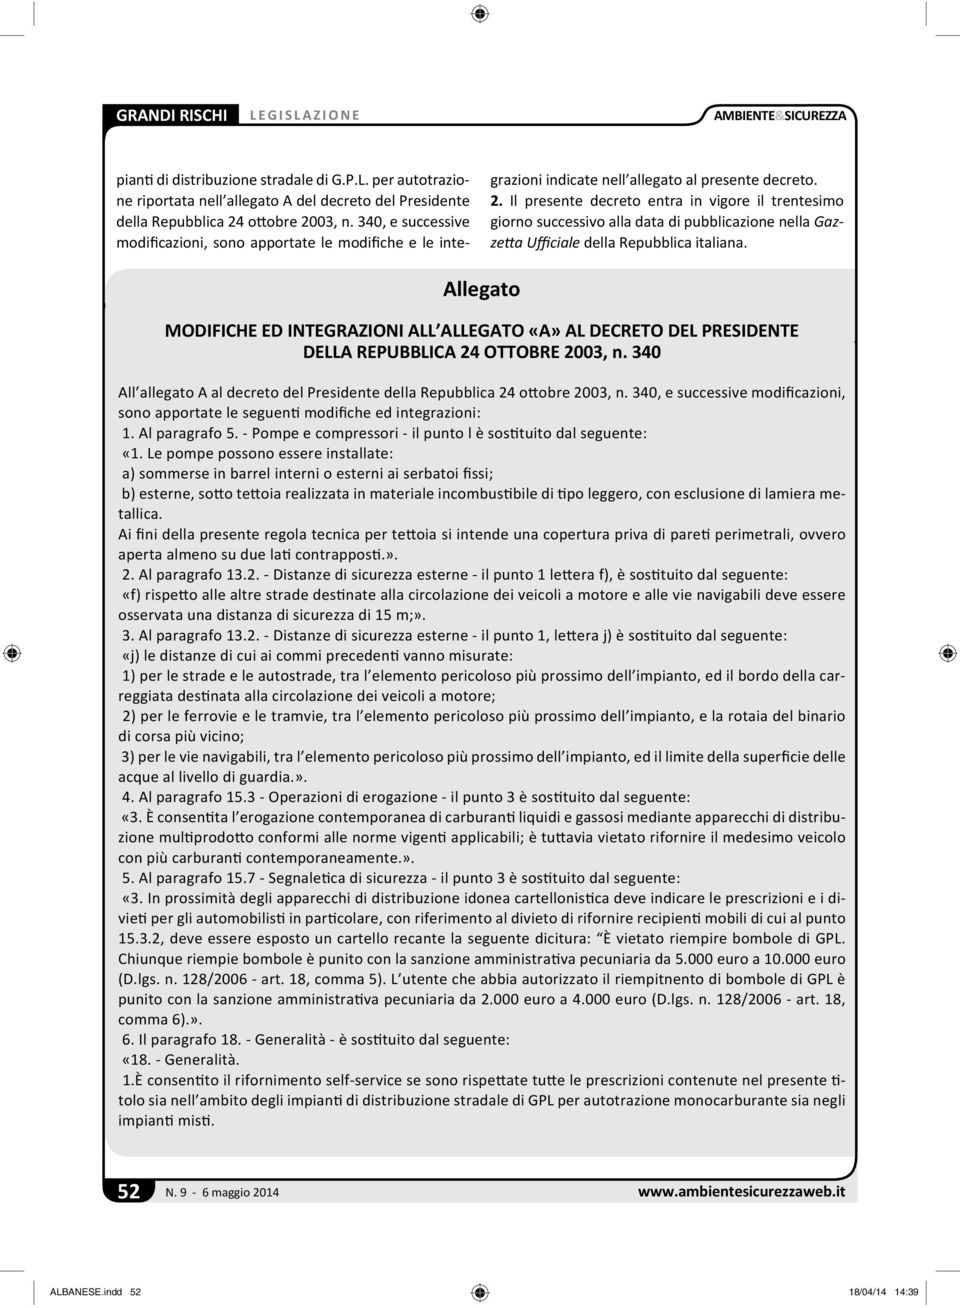 Il presente decreto entra in vigore il trentesimo giorno successivo alla data di pubblicazione nella Gazze a Ufficiale della Repubblica italiana.